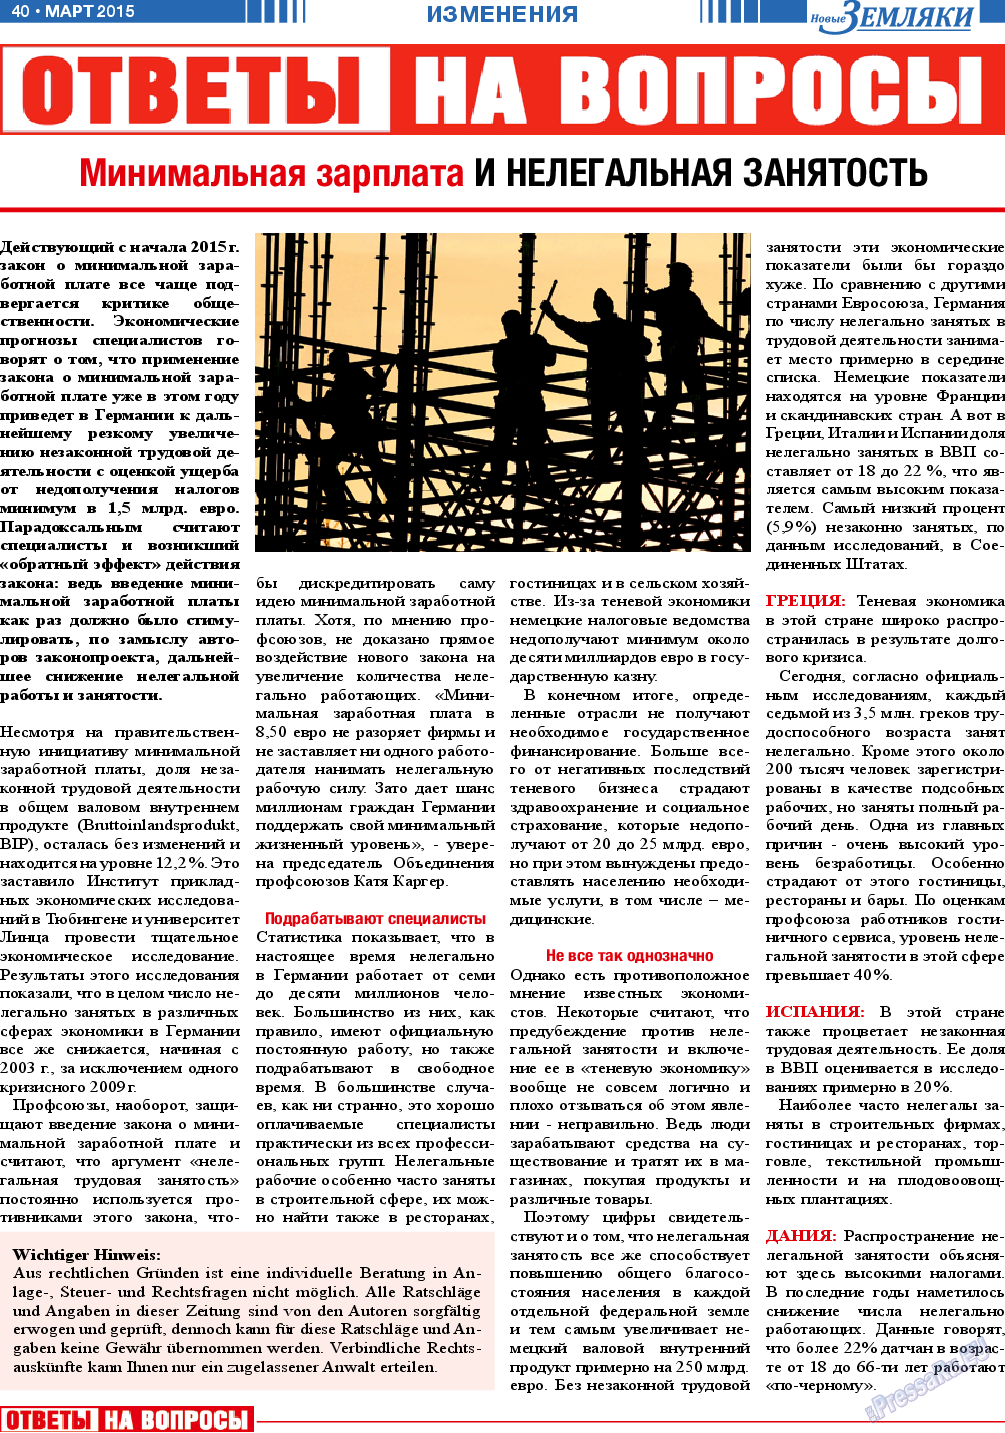 Новые Земляки, газета. 2015 №3 стр.40